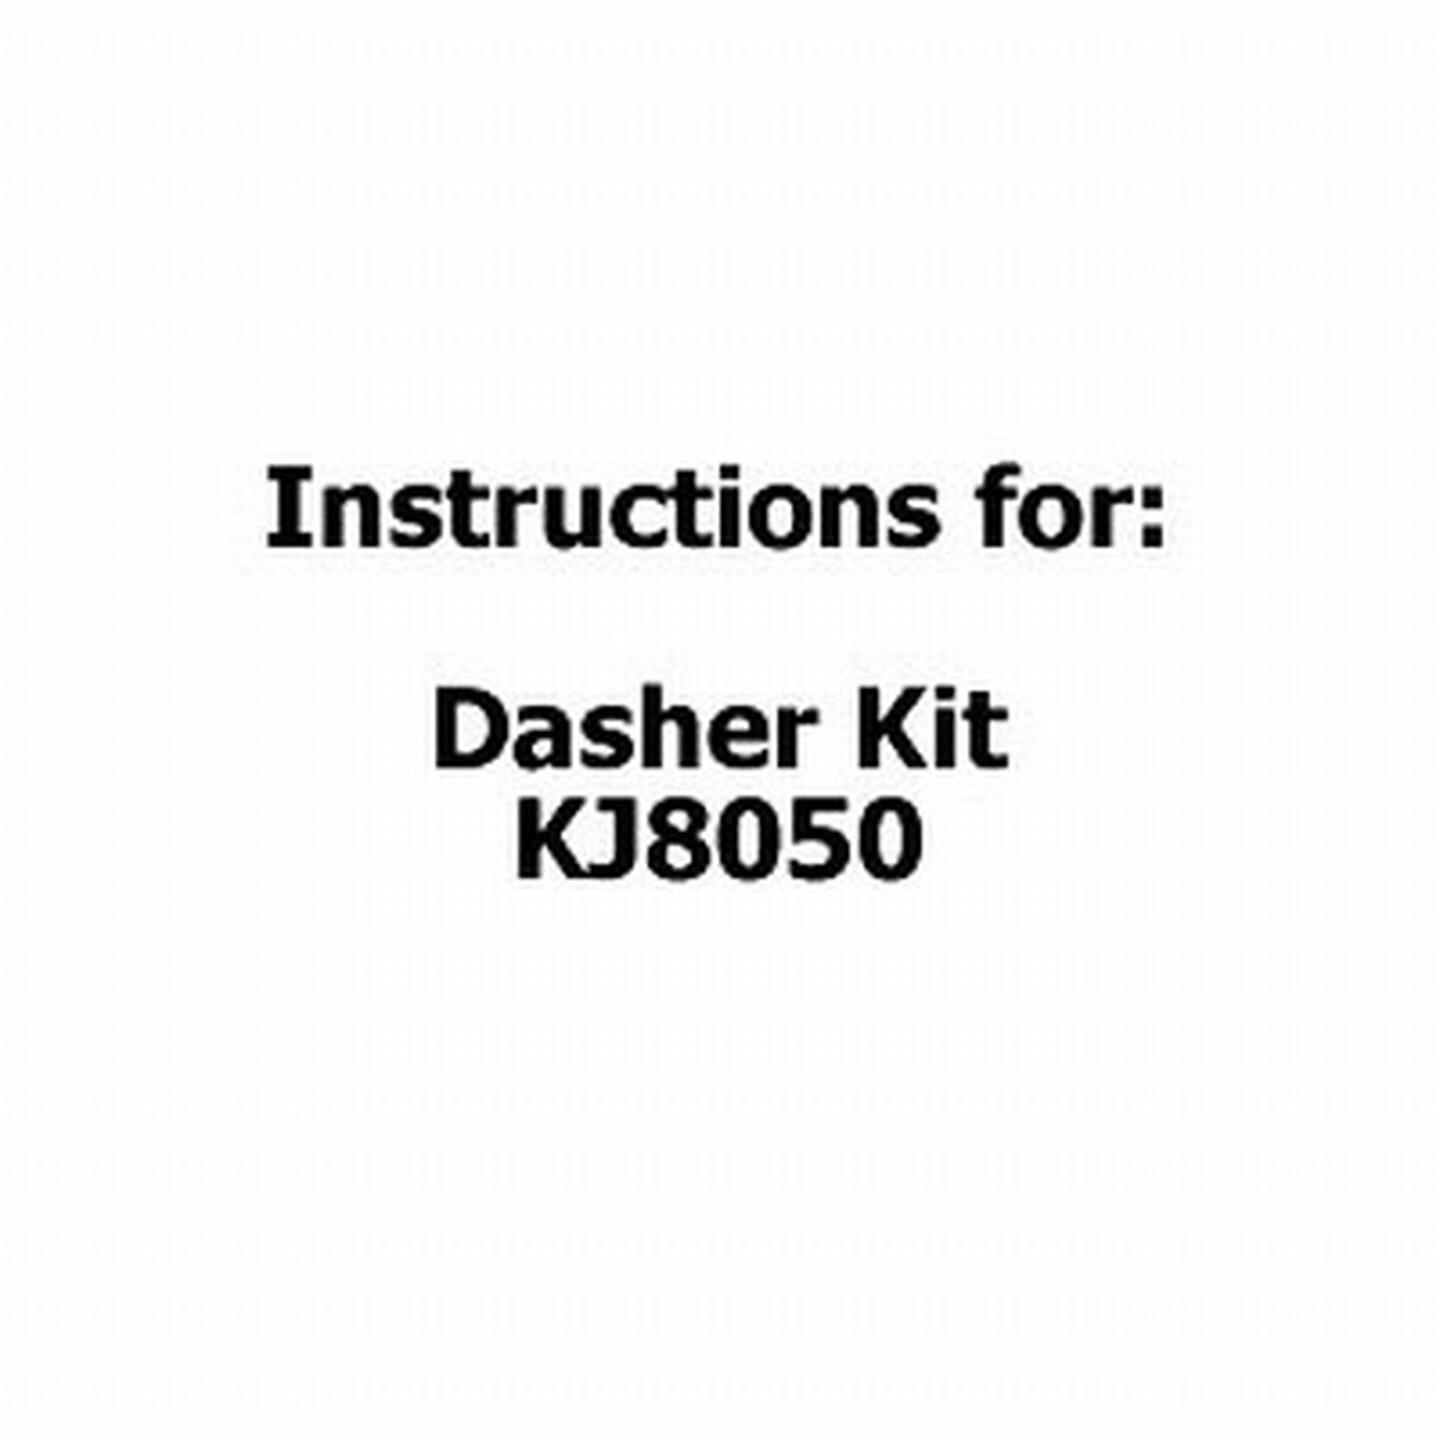 Instructions for Dasher Kit KJ8050